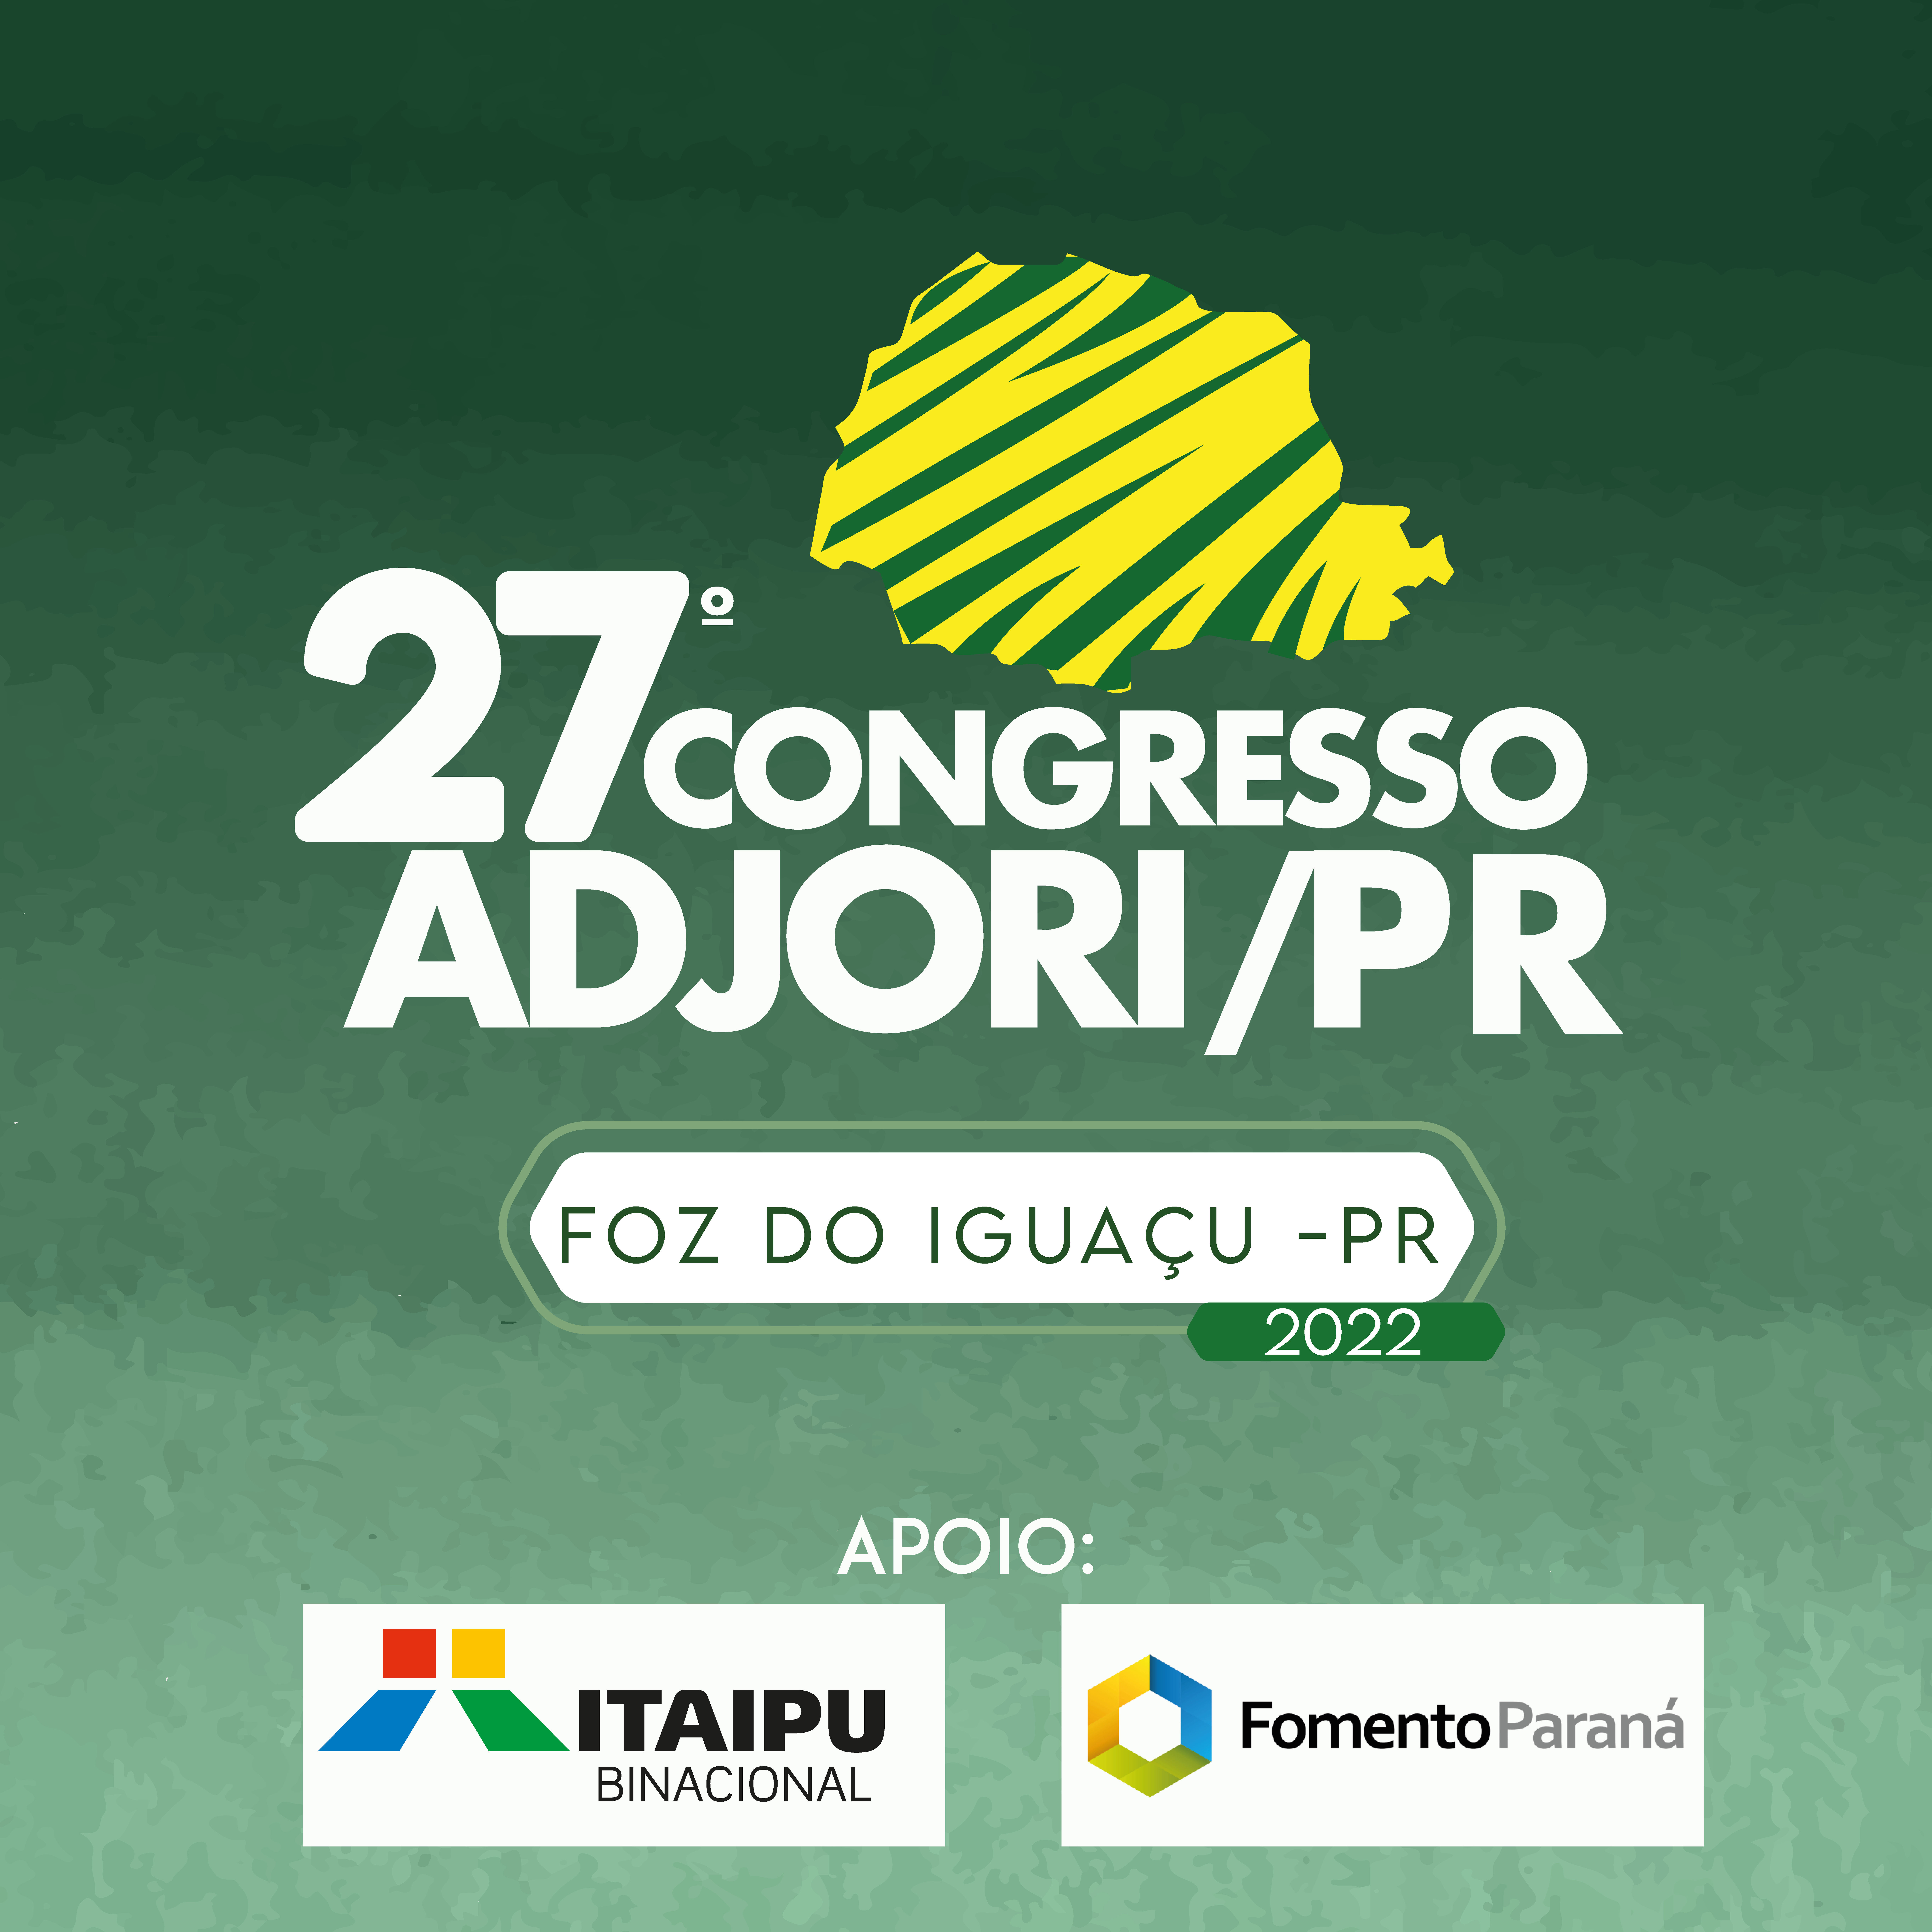 27º Congresso Adjori-PR acontece em Foz do Iguaçu entre 22 e 24 de maio